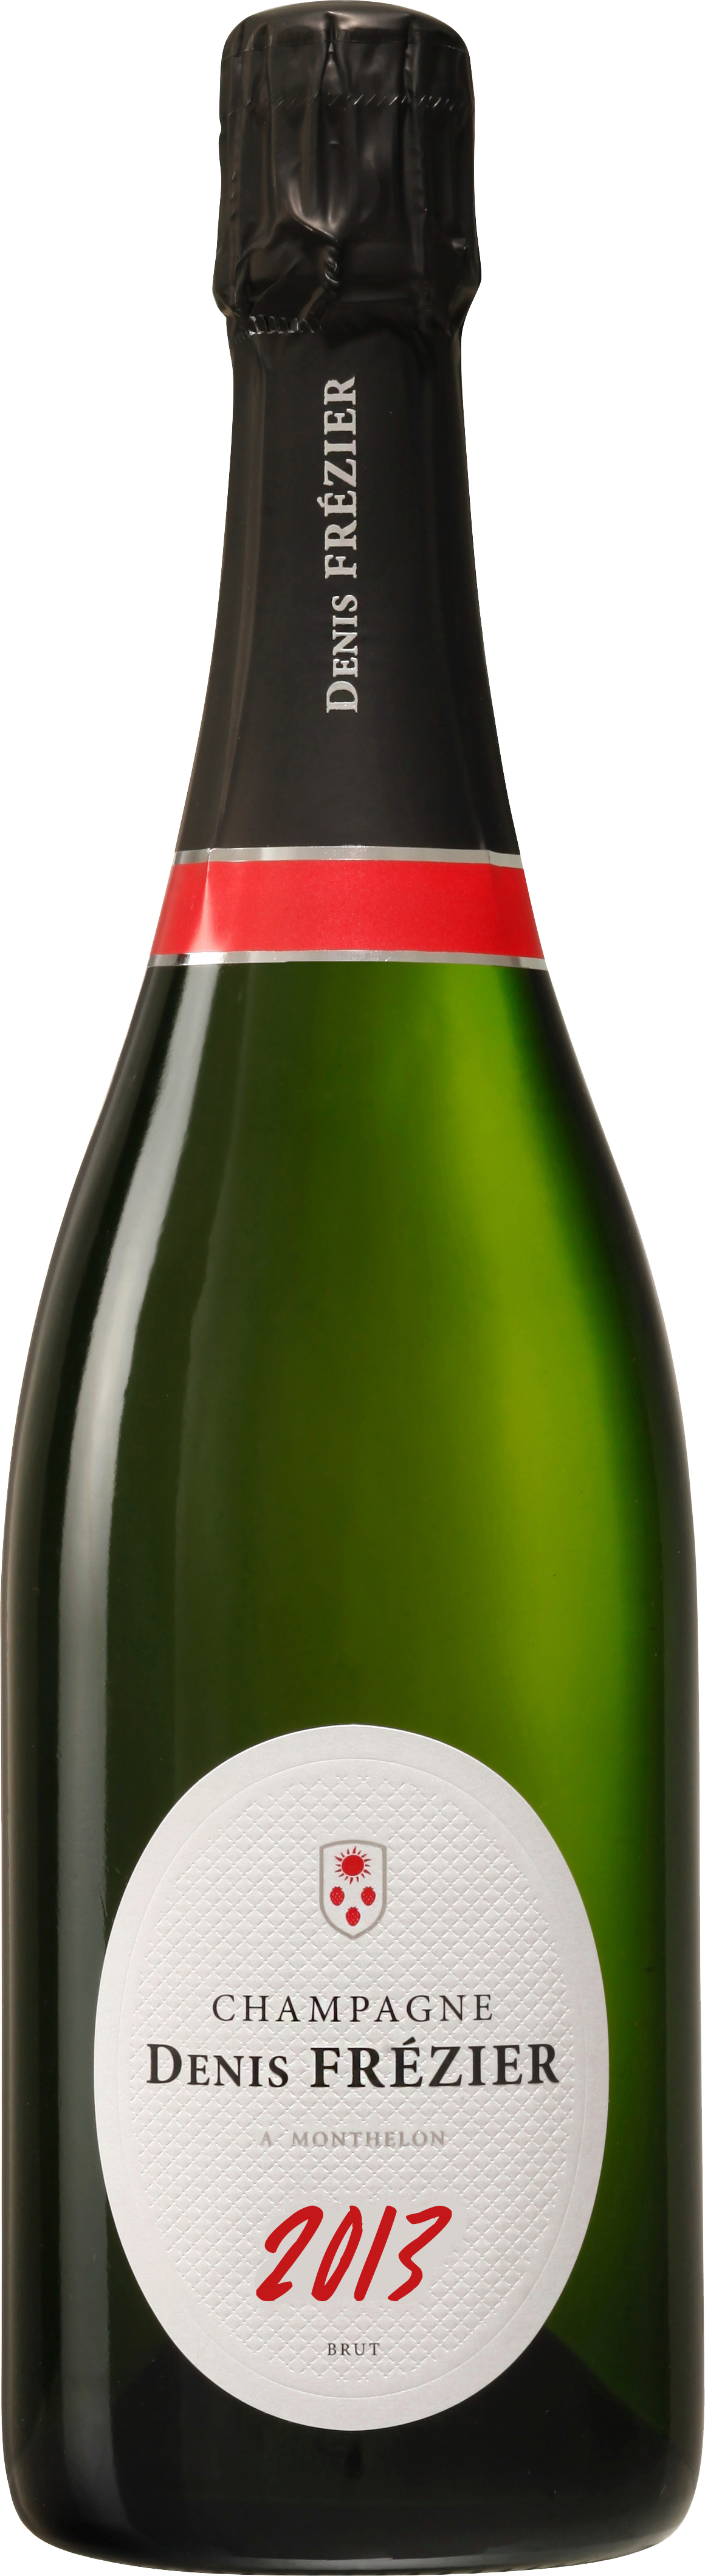 Millésime 2013 Brut - Champagne Denis Frézier